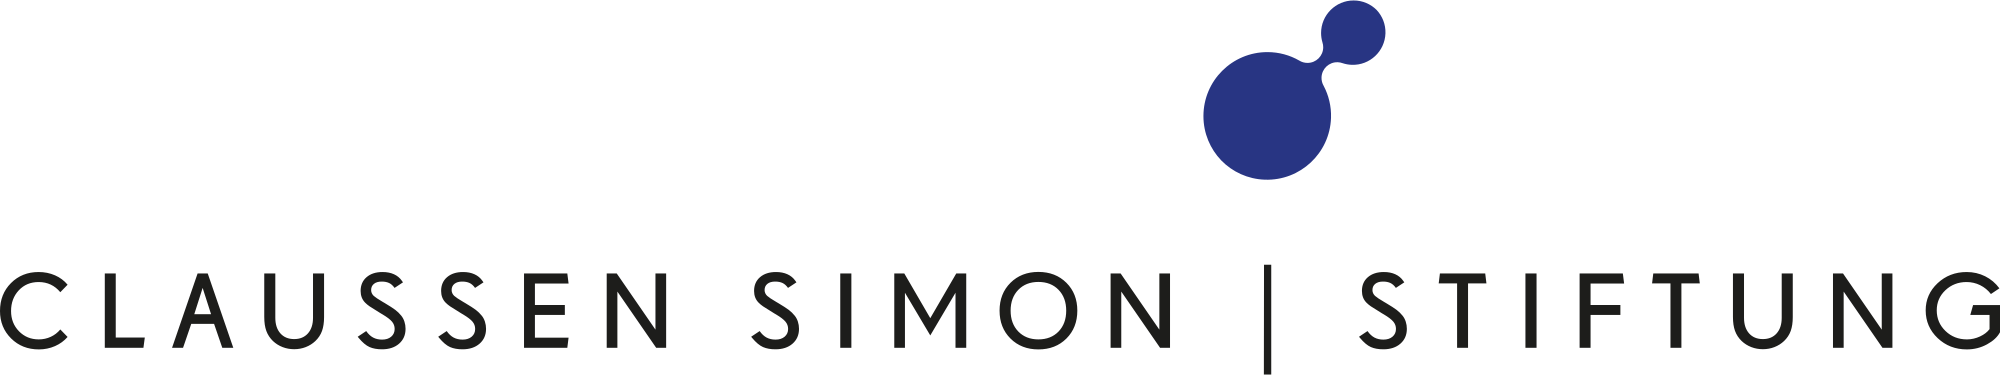 Claussen Simon Stiftung